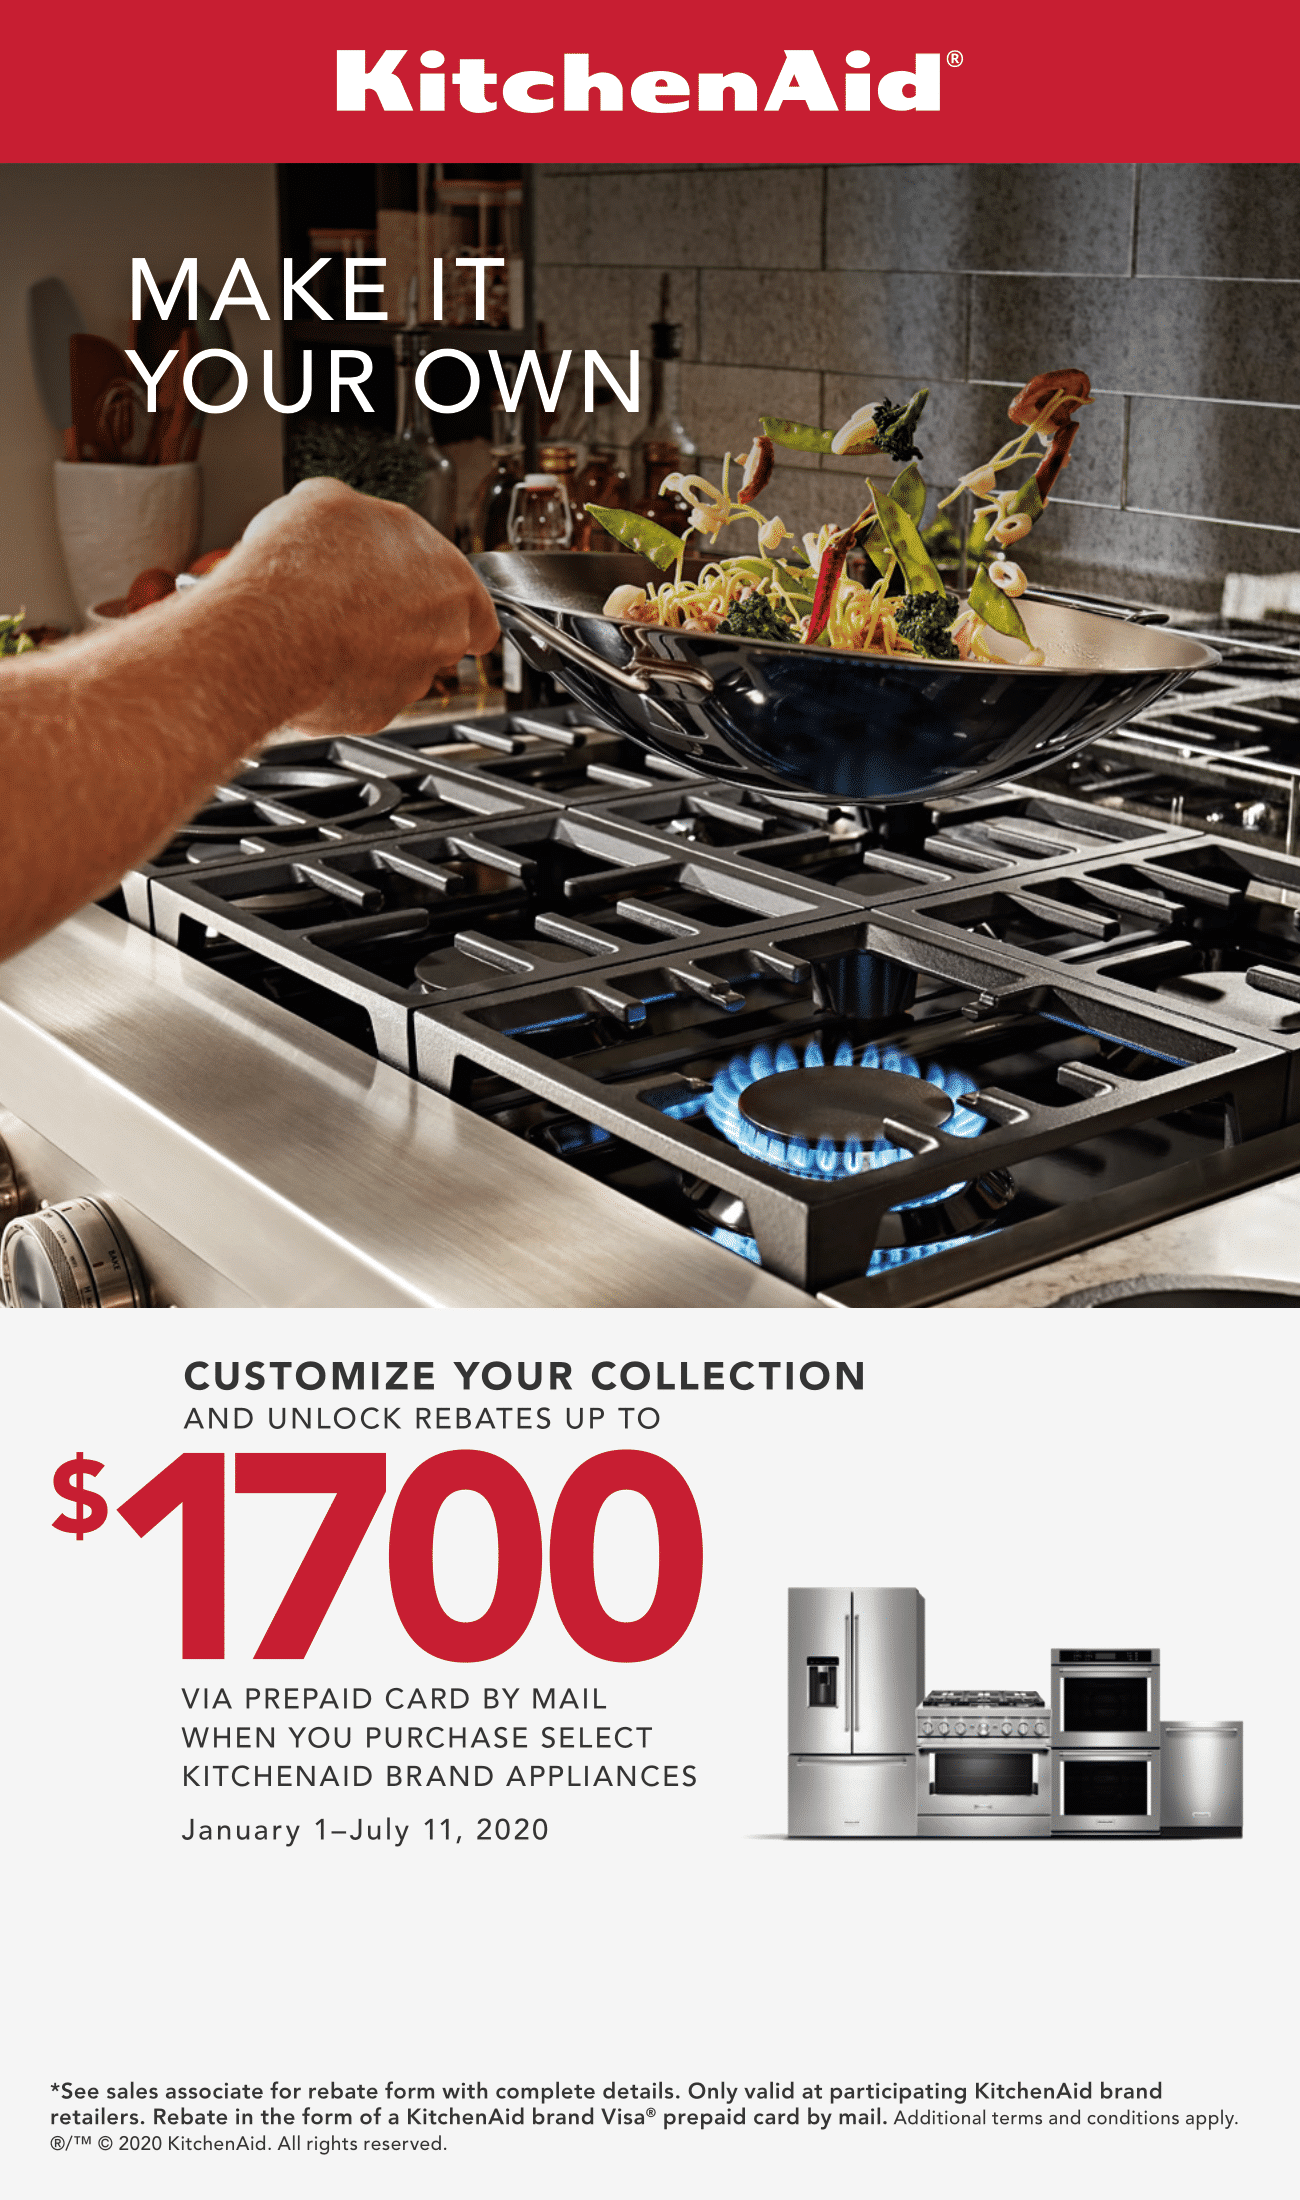 Kitchen Appliance Sales